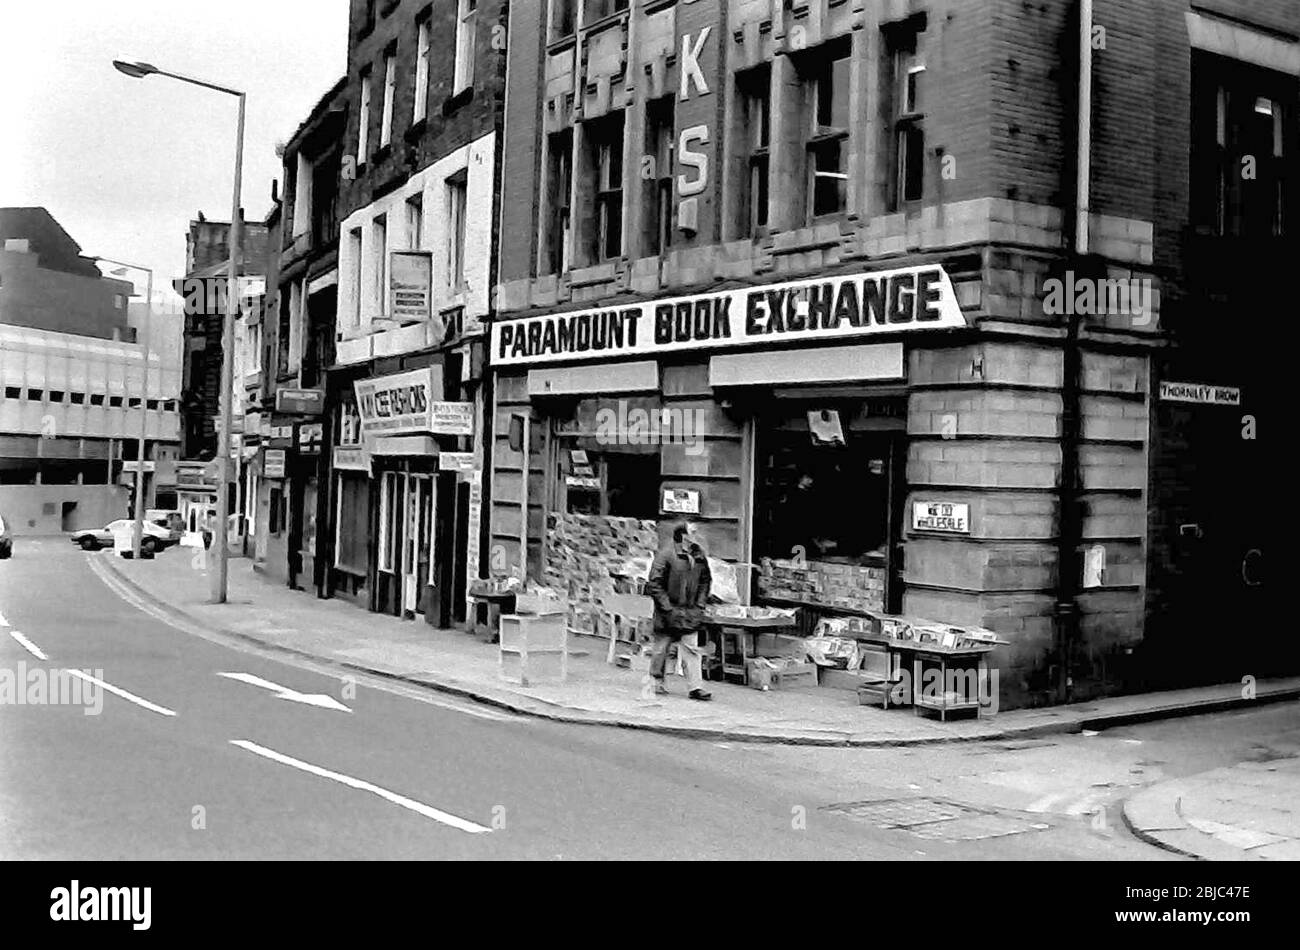 The Paramount Book Exchange, una libreria a conduzione familiare aperta dal 1965, che immagazzina libri di seconda mano e rari, più fumetti e riviste a 25-27 Shudehill, Manchester, Regno Unito, nella foto del 1984. Foto Stock